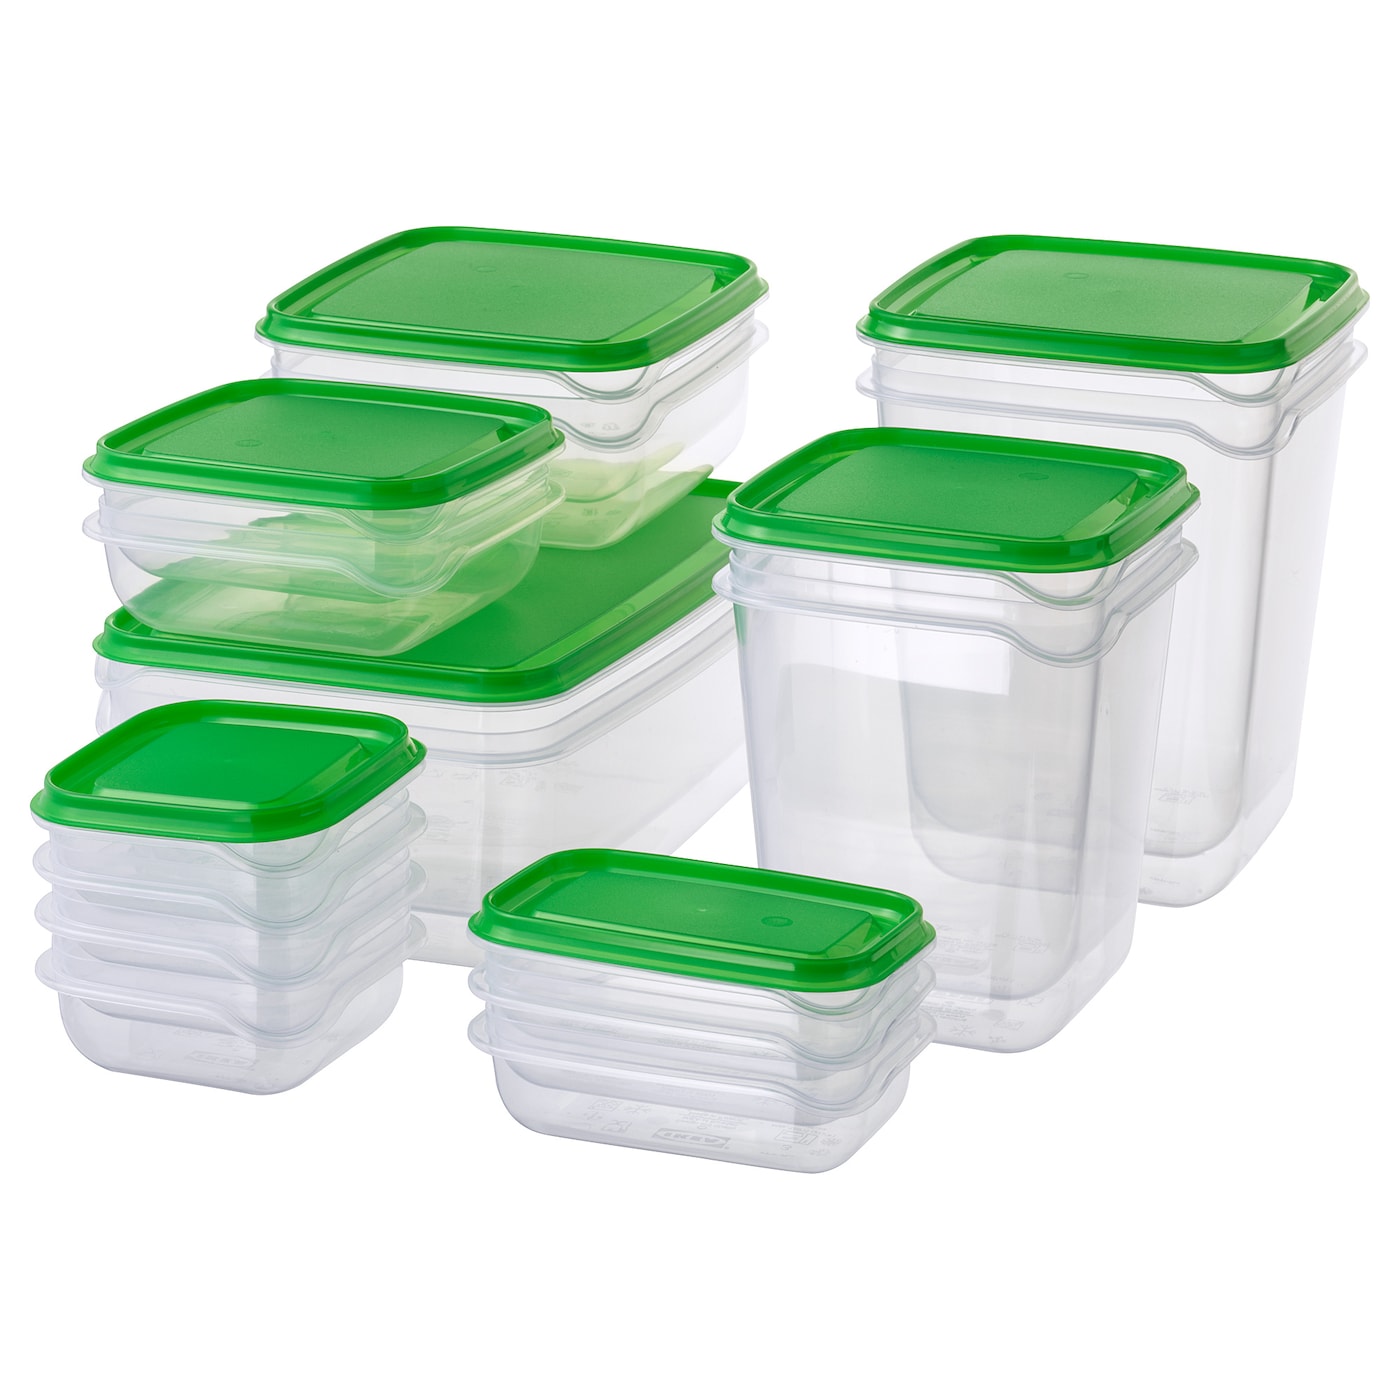 Набор контейнеров для продуктов с крышкой, 17 шт. - IKEA PRUTA, зеленый/прозрачный, ПРУТА ИКЕА